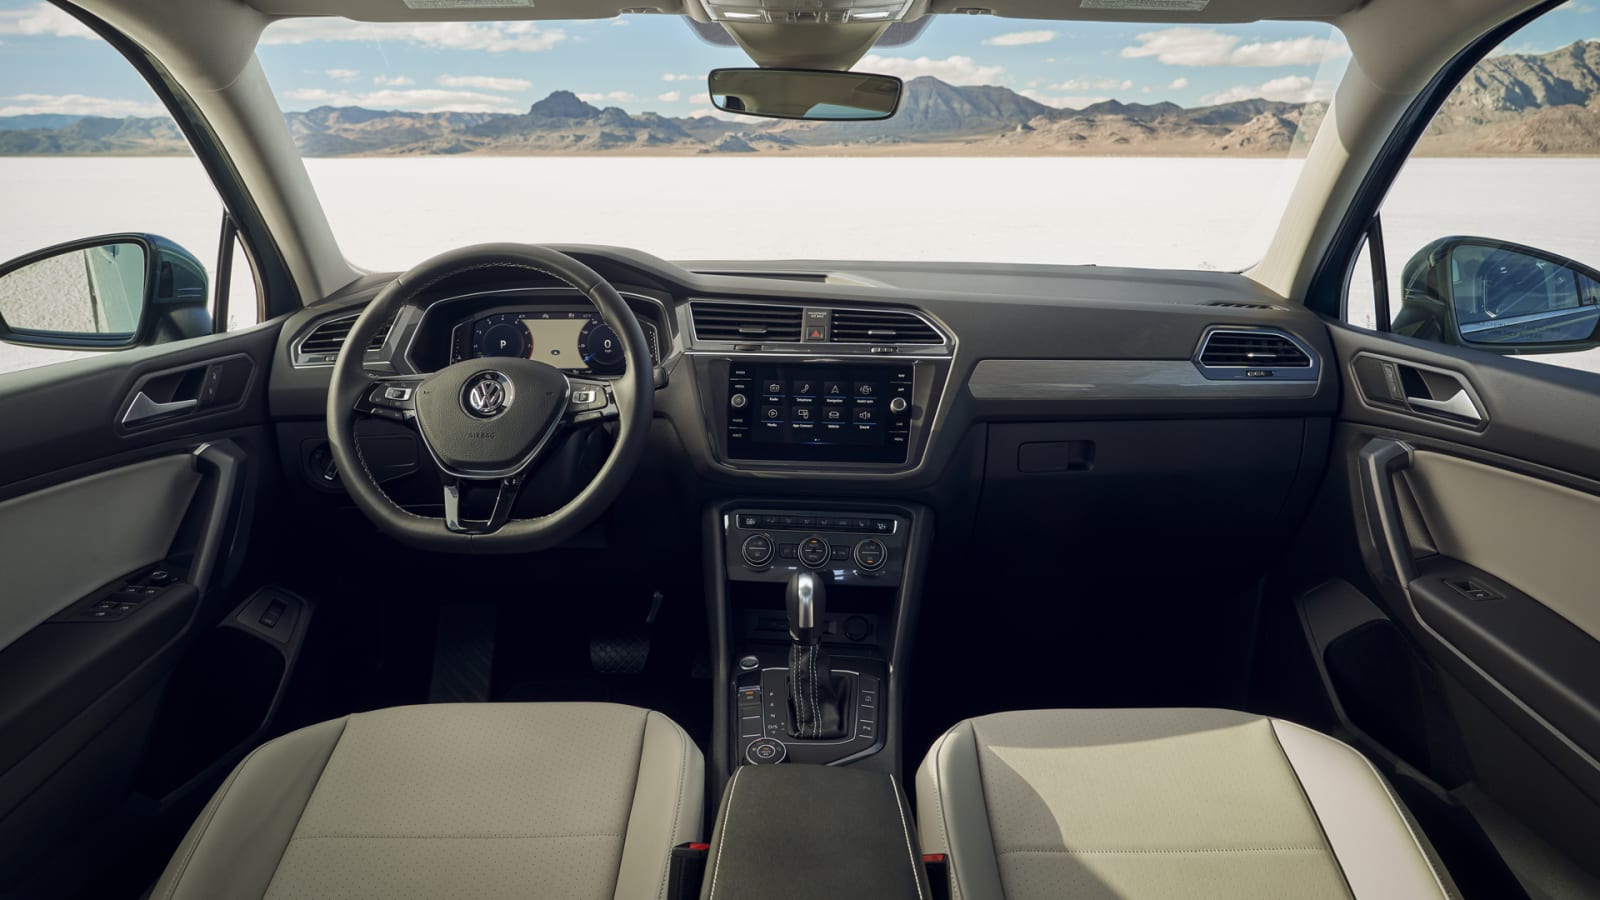 2021 Volkswagen Tiguan: Features, Trim Options, Interior